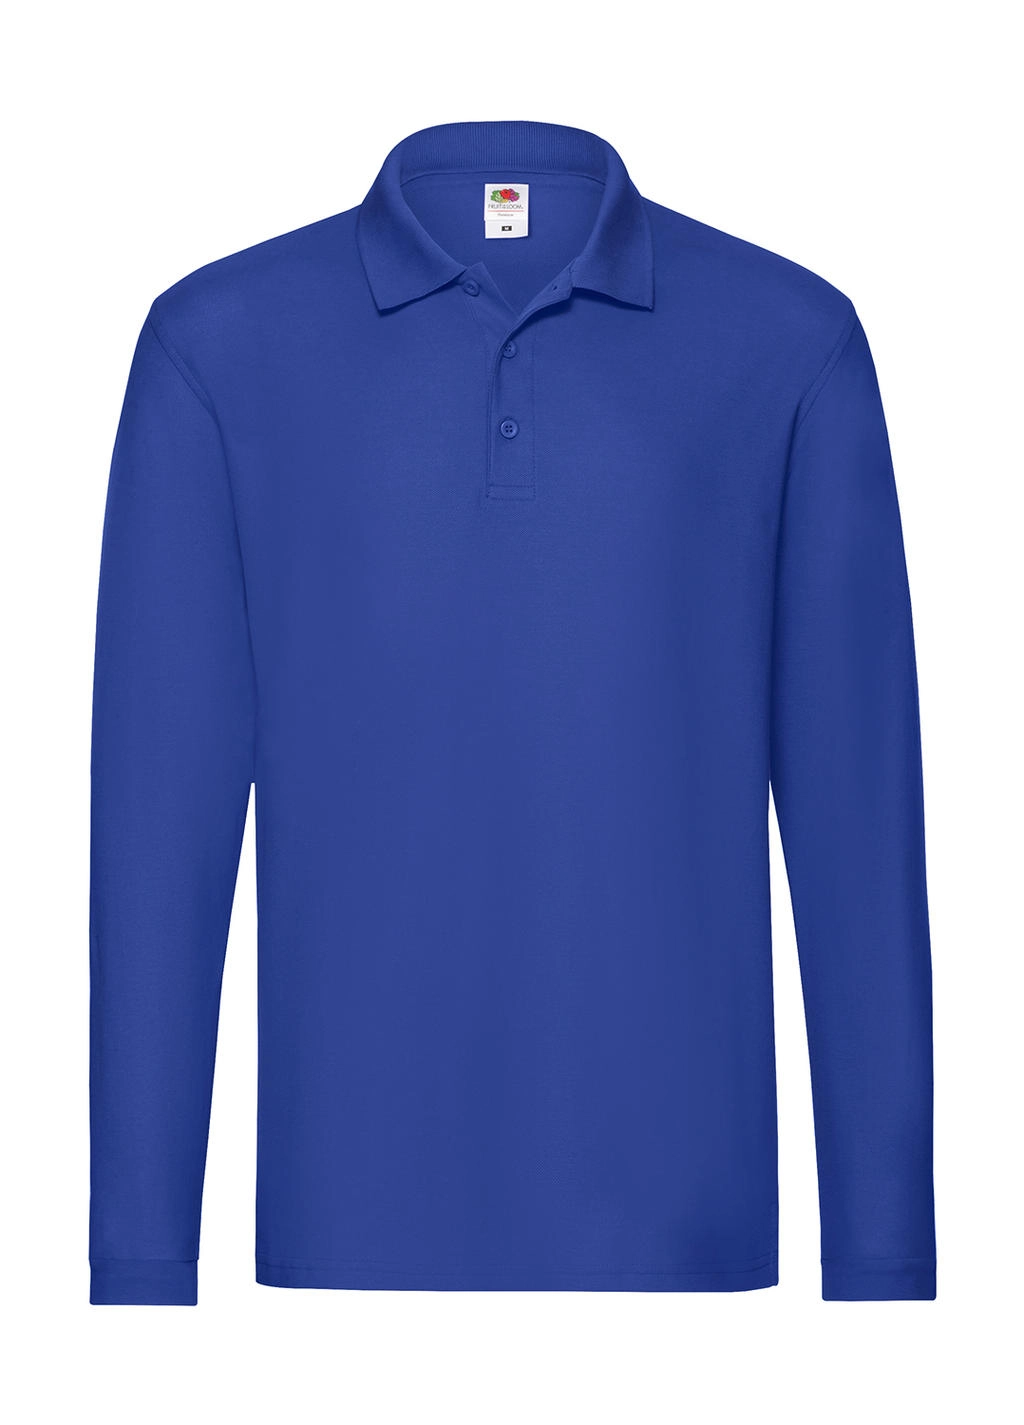 Premium Long Sleeve Polo zum Besticken und Bedrucken in der Farbe Royal mit Ihren Logo, Schriftzug oder Motiv.